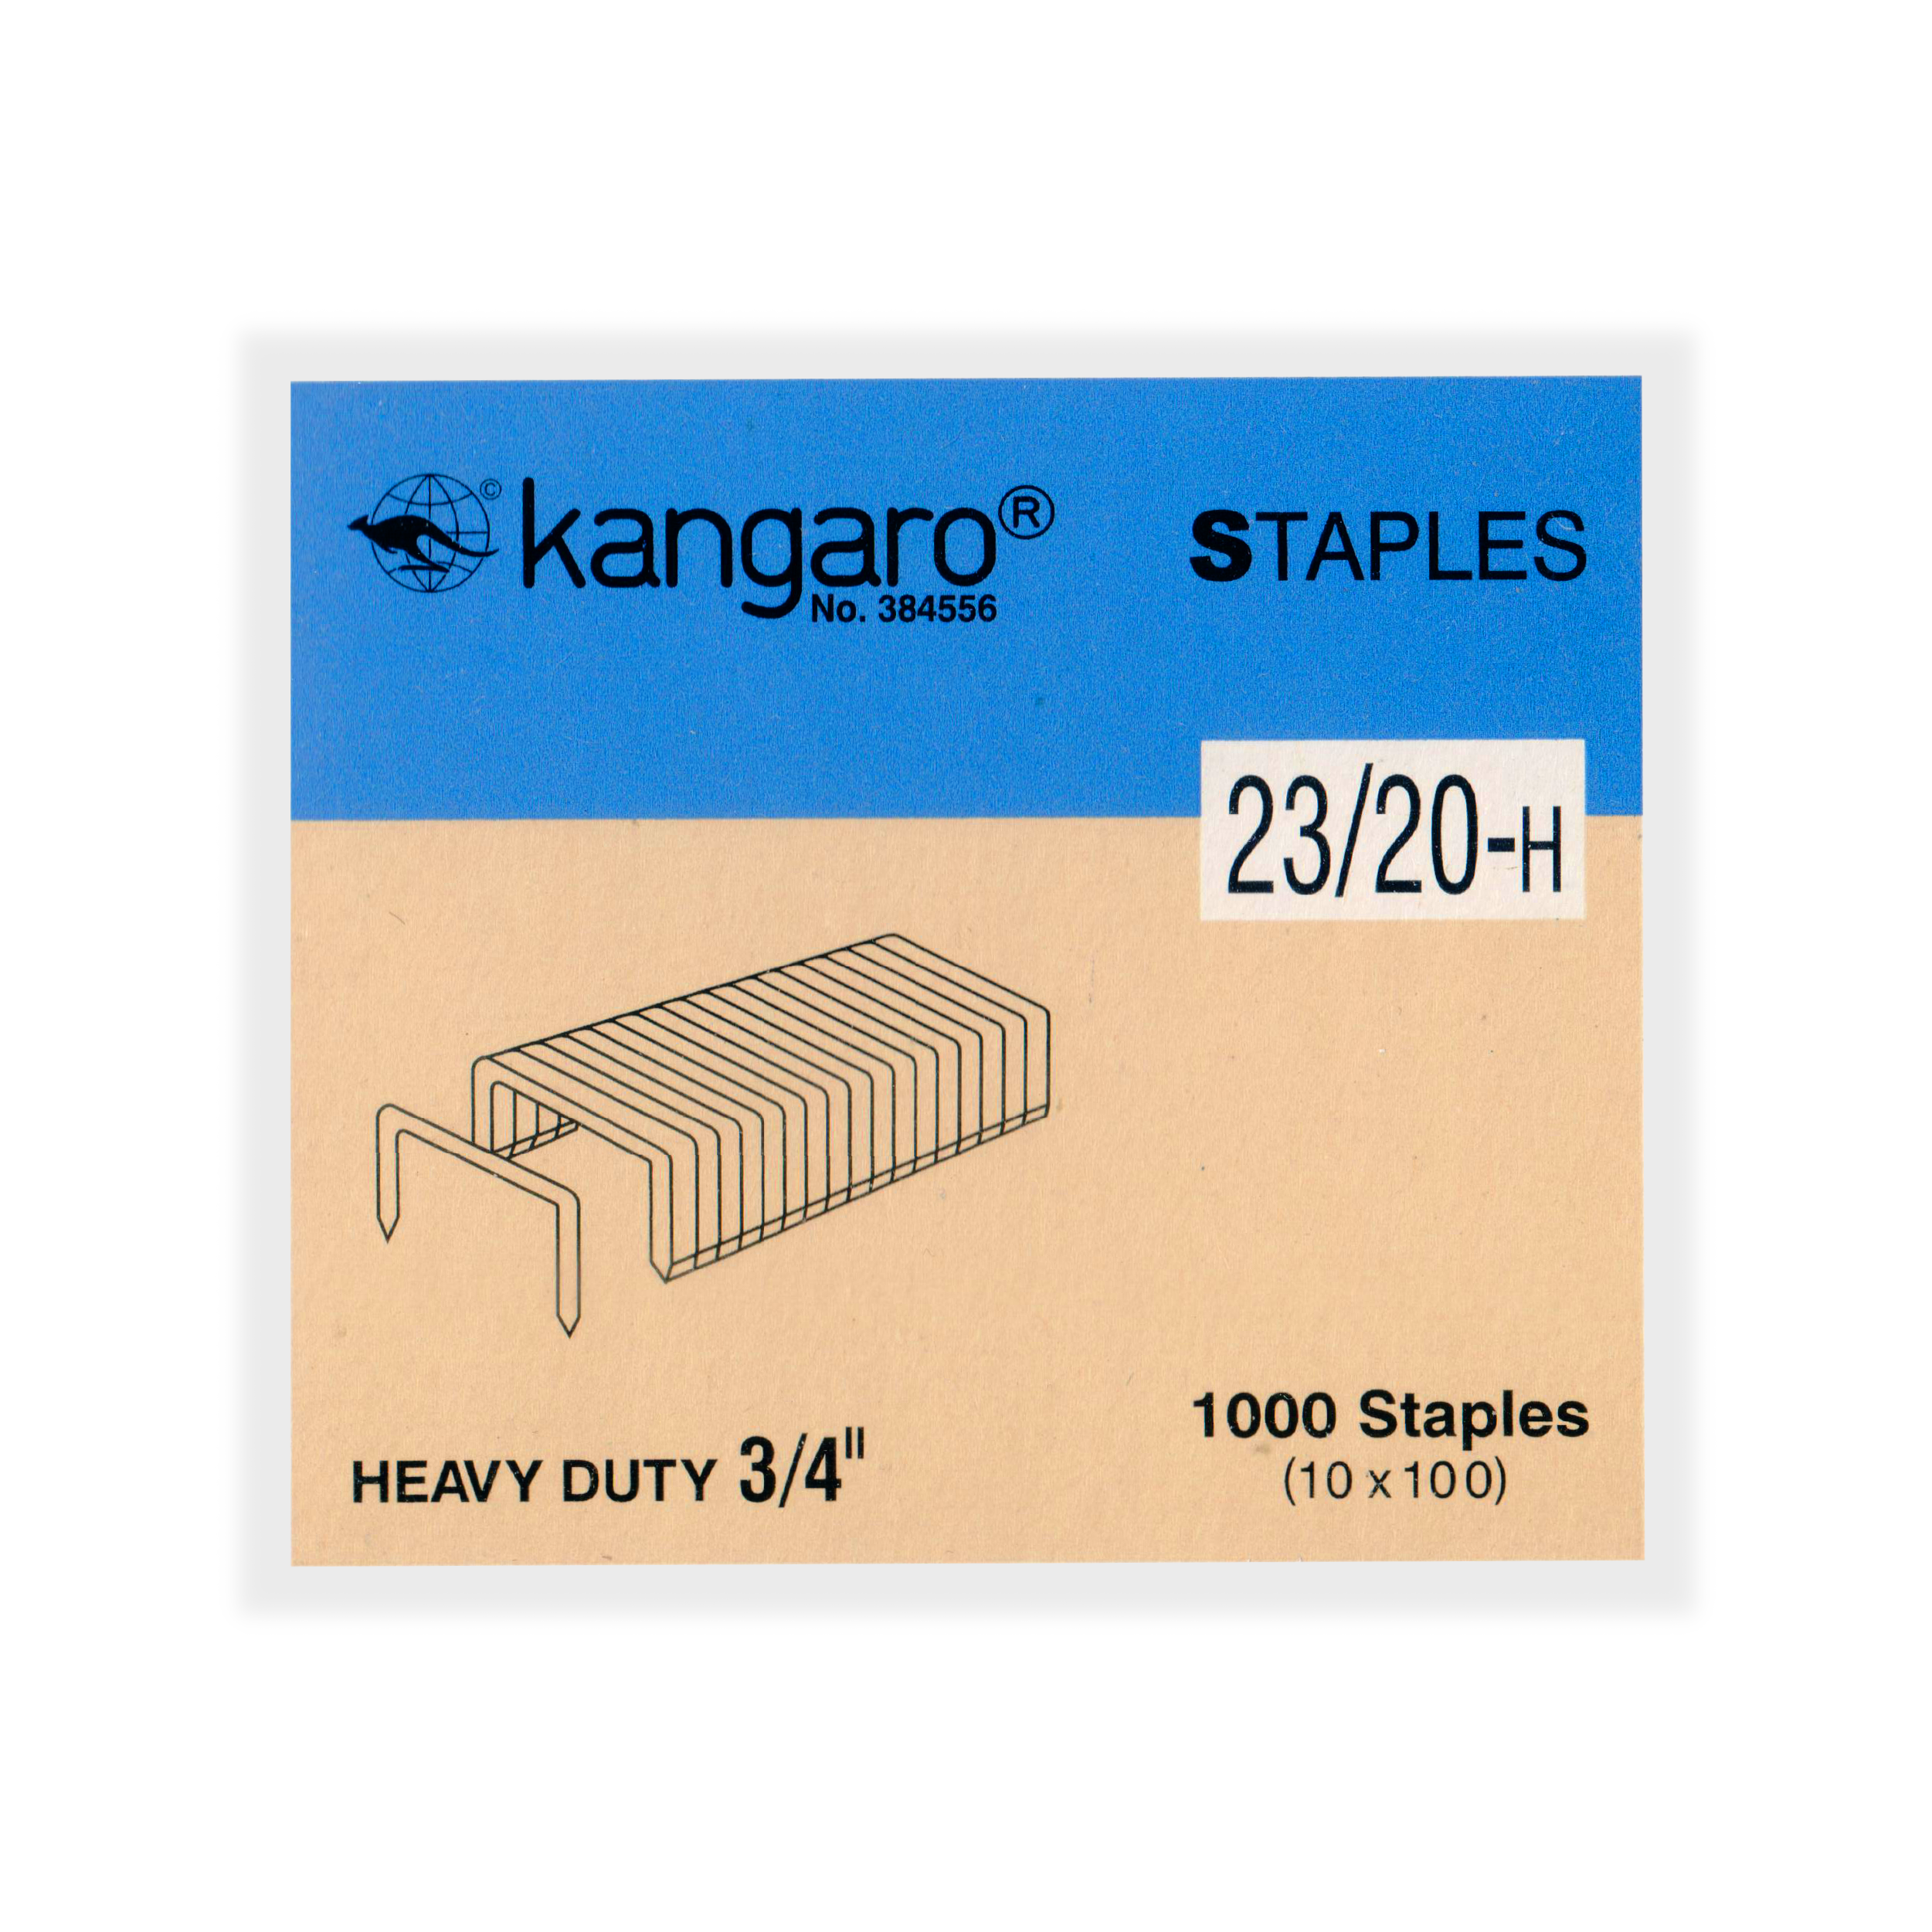 Kangaro Staples, 1000/Box (No.23/10-H)